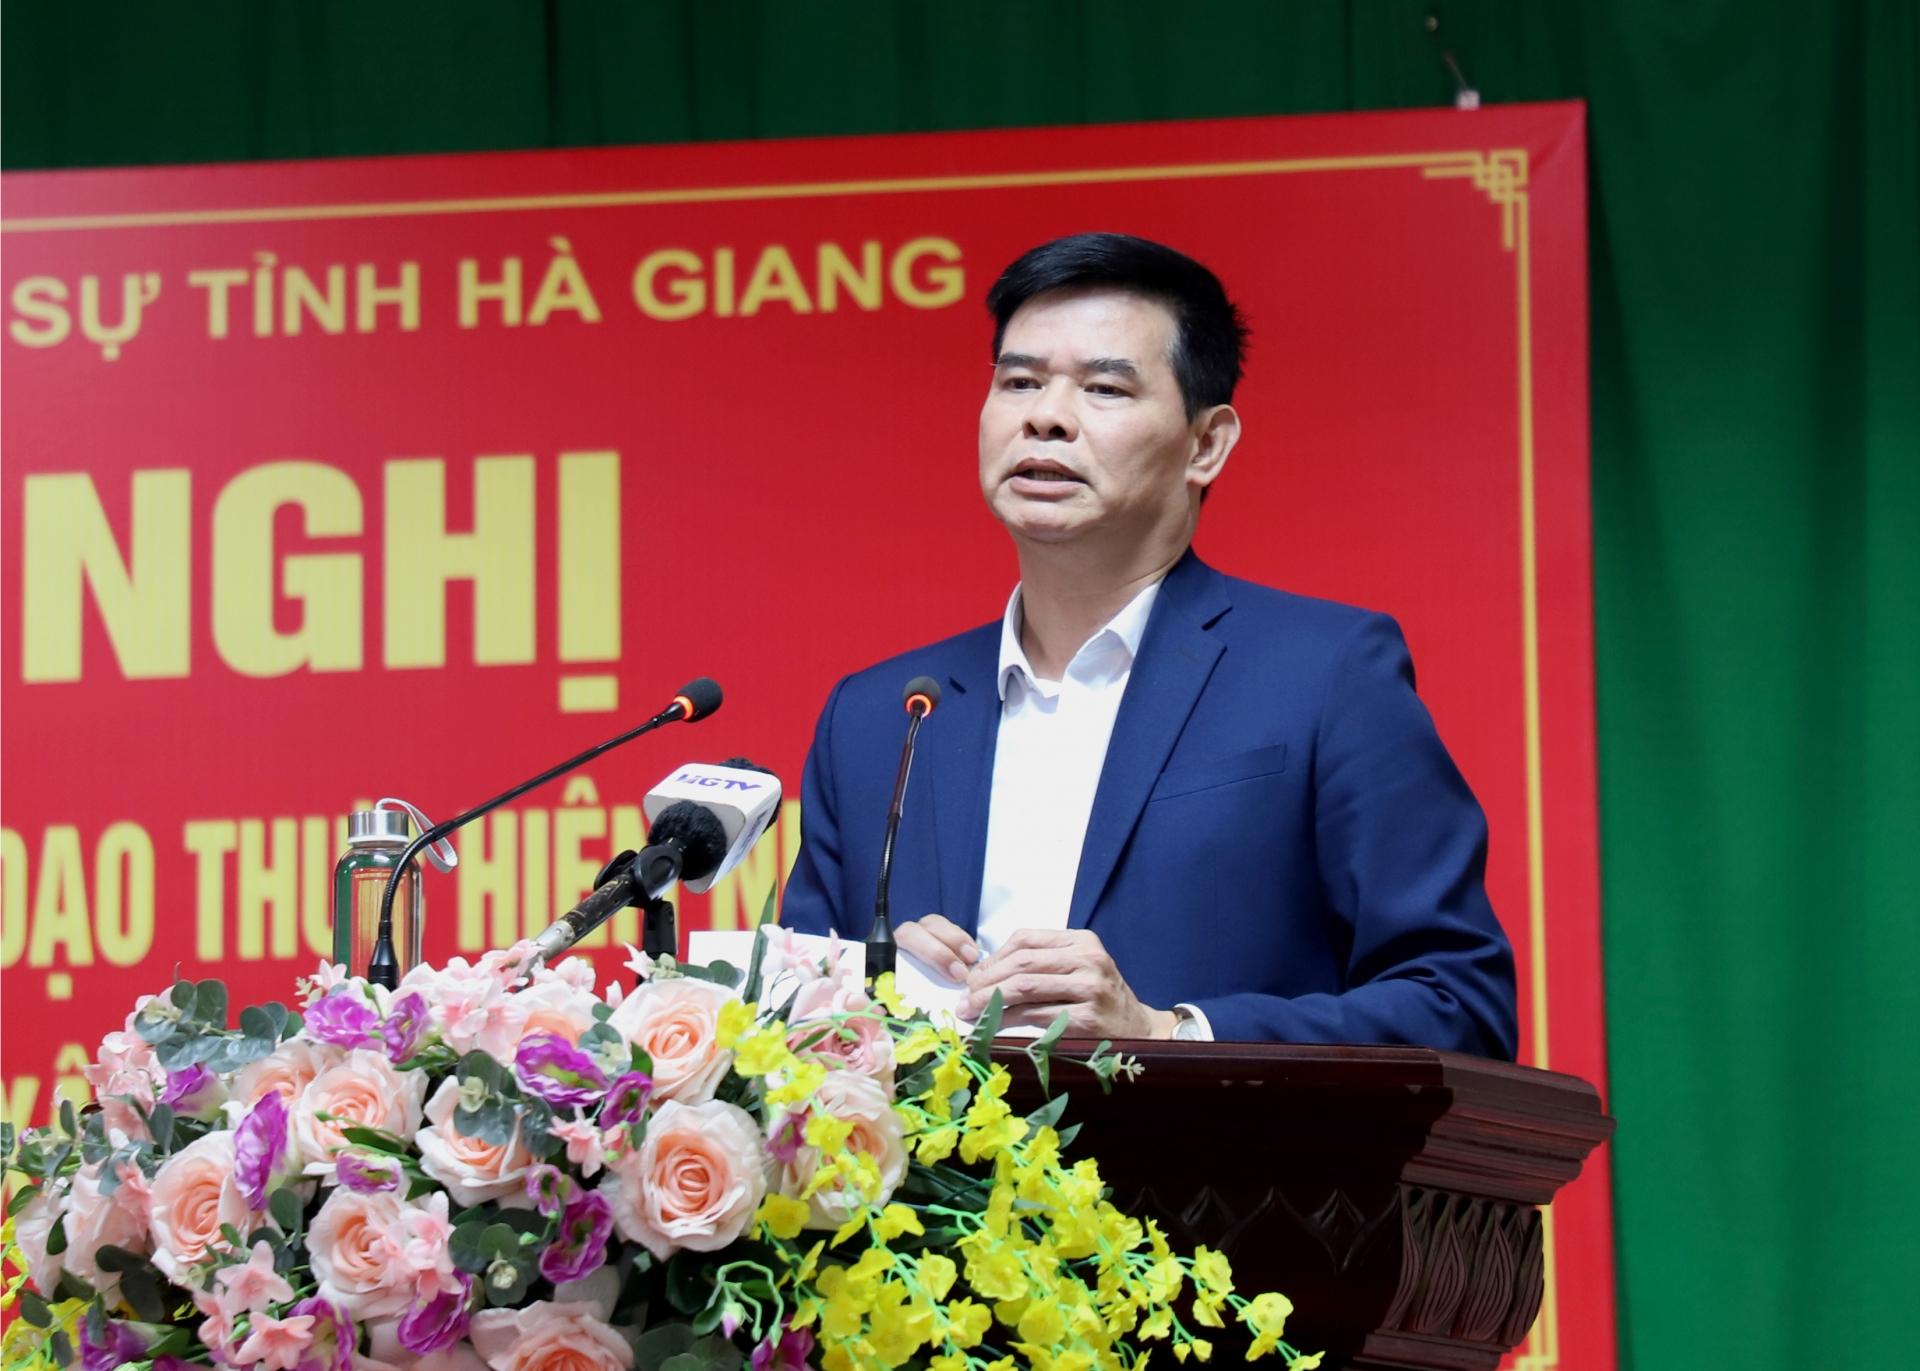 Bí thư Huyện ủy Quang Bình Nguyễn Trung Ngọc kiến nghị Quân khu 2 và tỉnh xem xét hỗ trợ huyện trong công tác giải phóng mặt bằng diện tích đất thu hồi để phục vụ công tác quân sự.